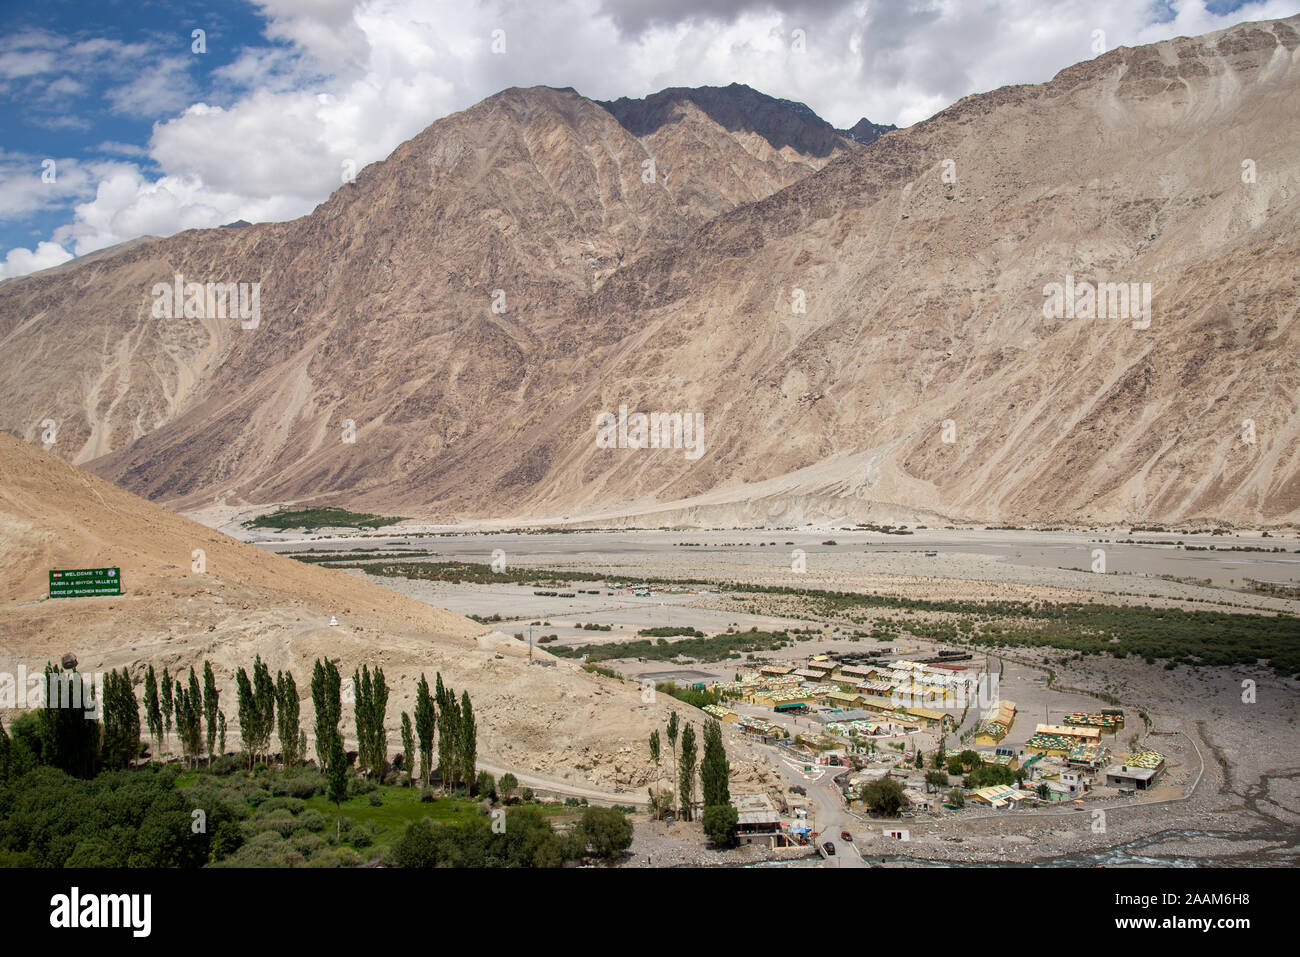 Camp militaire dans la vallée de Nubra au Ladakh, Inde du nord Banque D'Images